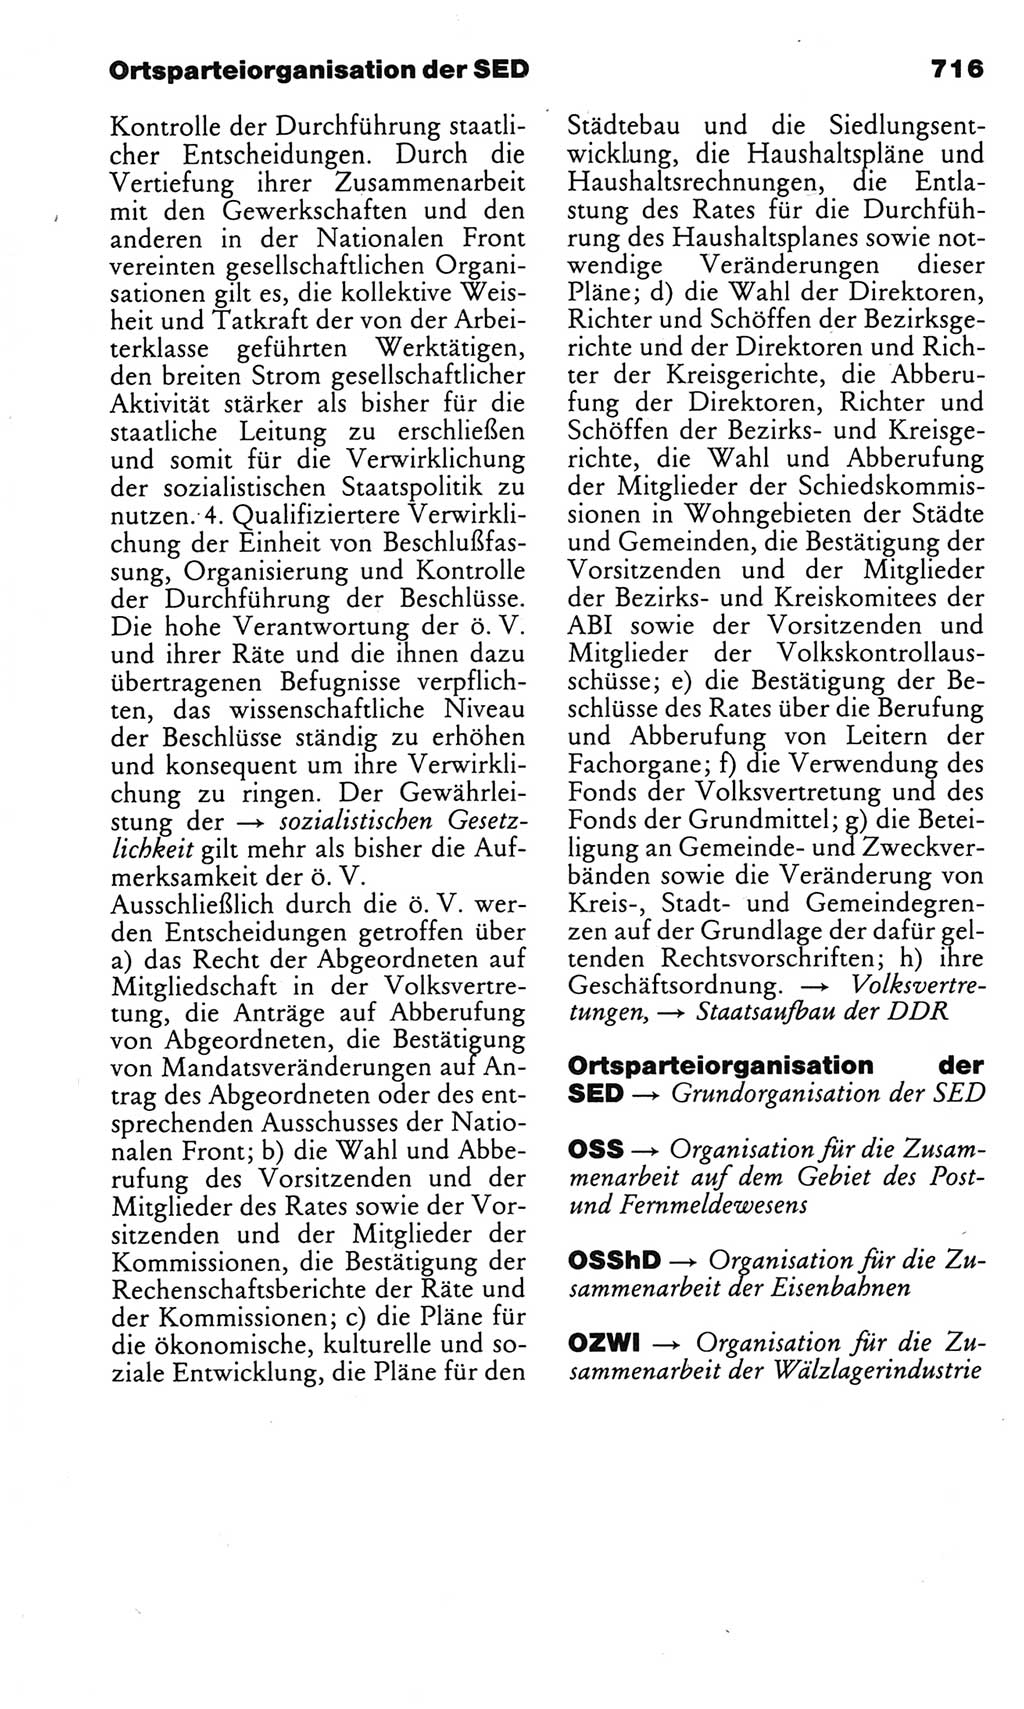 Kleines politisches Wörterbuch [Deutsche Demokratische Republik (DDR)] 1983, Seite 716 (Kl. pol. Wb. DDR 1983, S. 716)